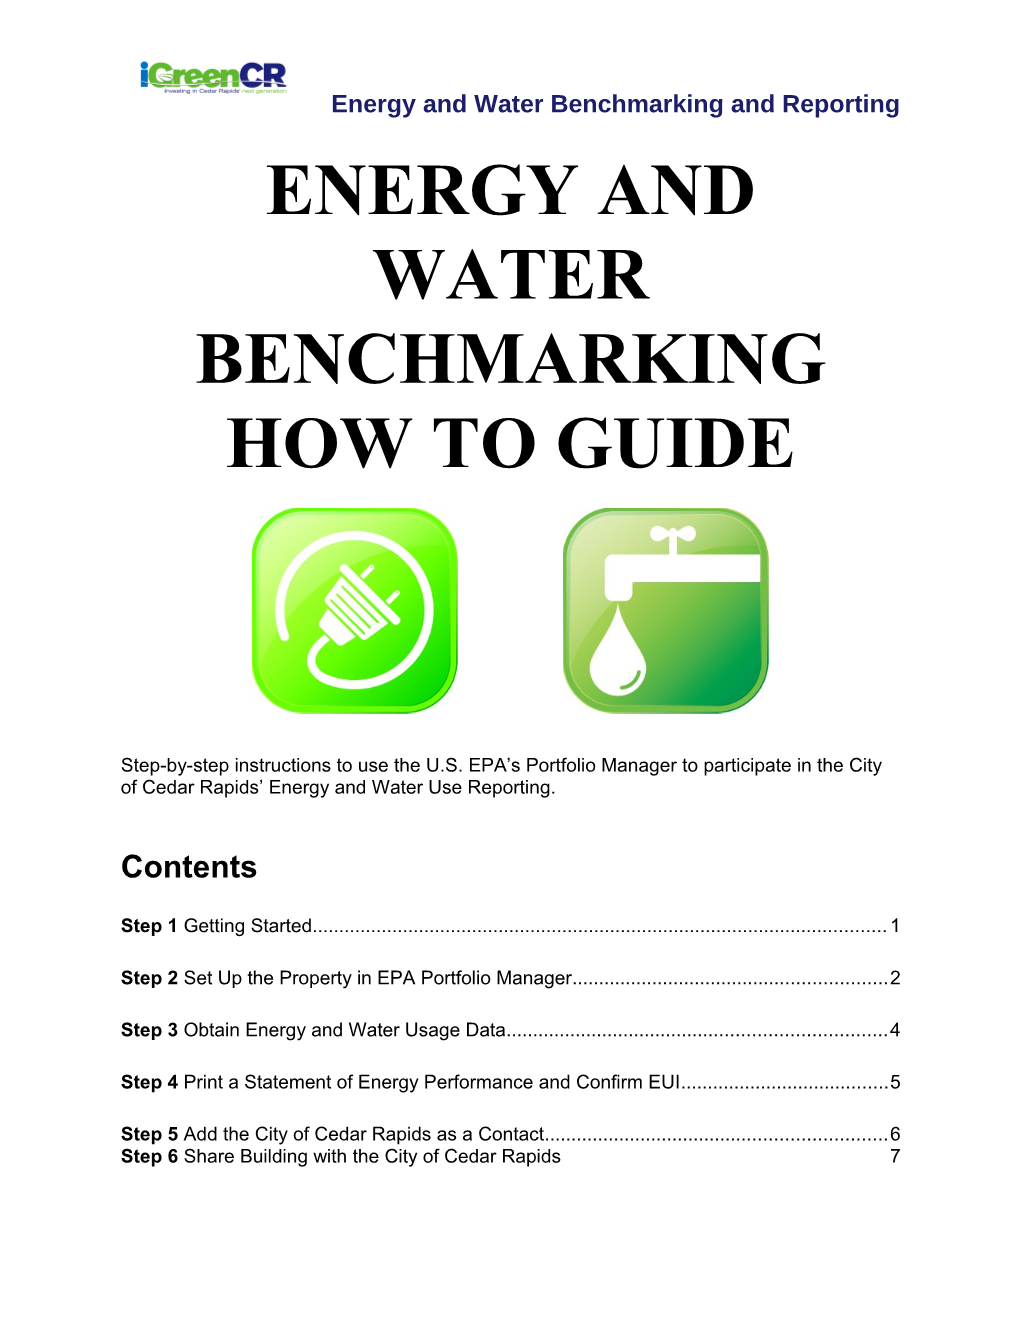 Energy Benchmarking Guidance